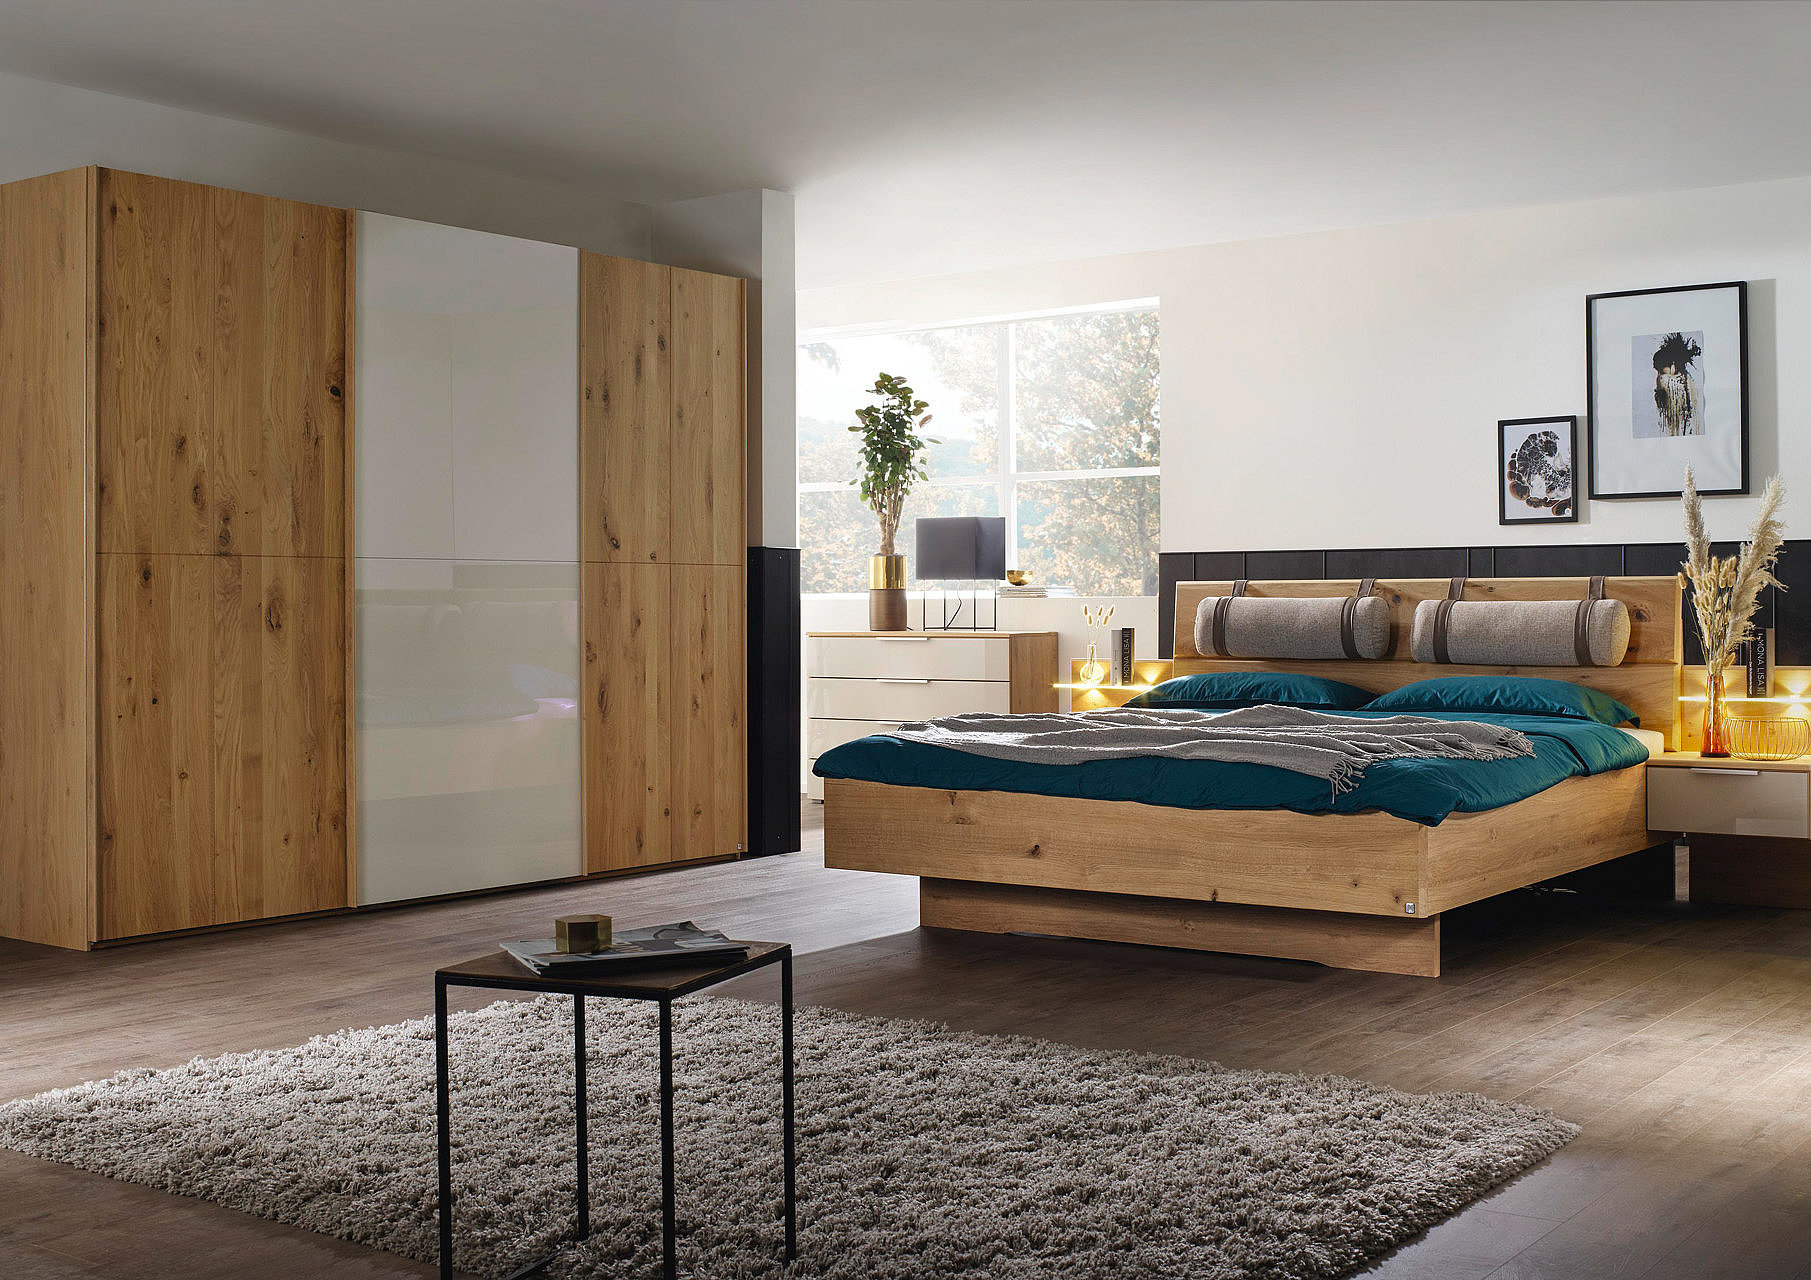 Bedroom - wooden furniture